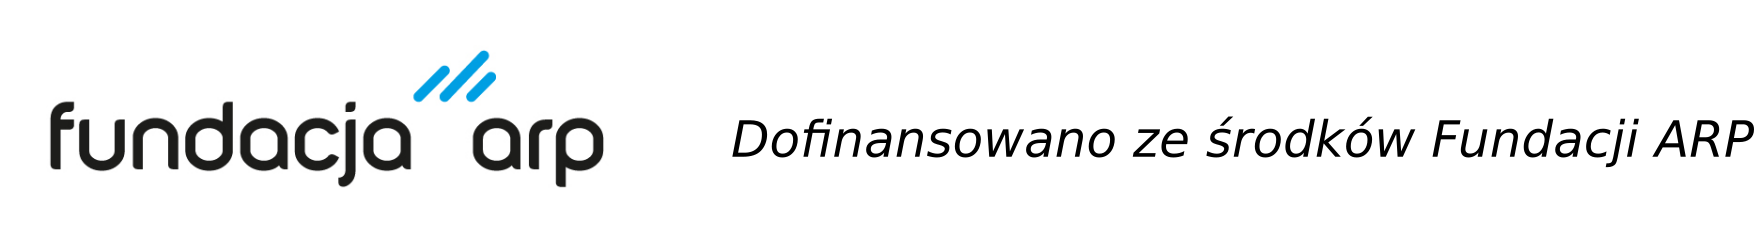 ARP logo z tekstem